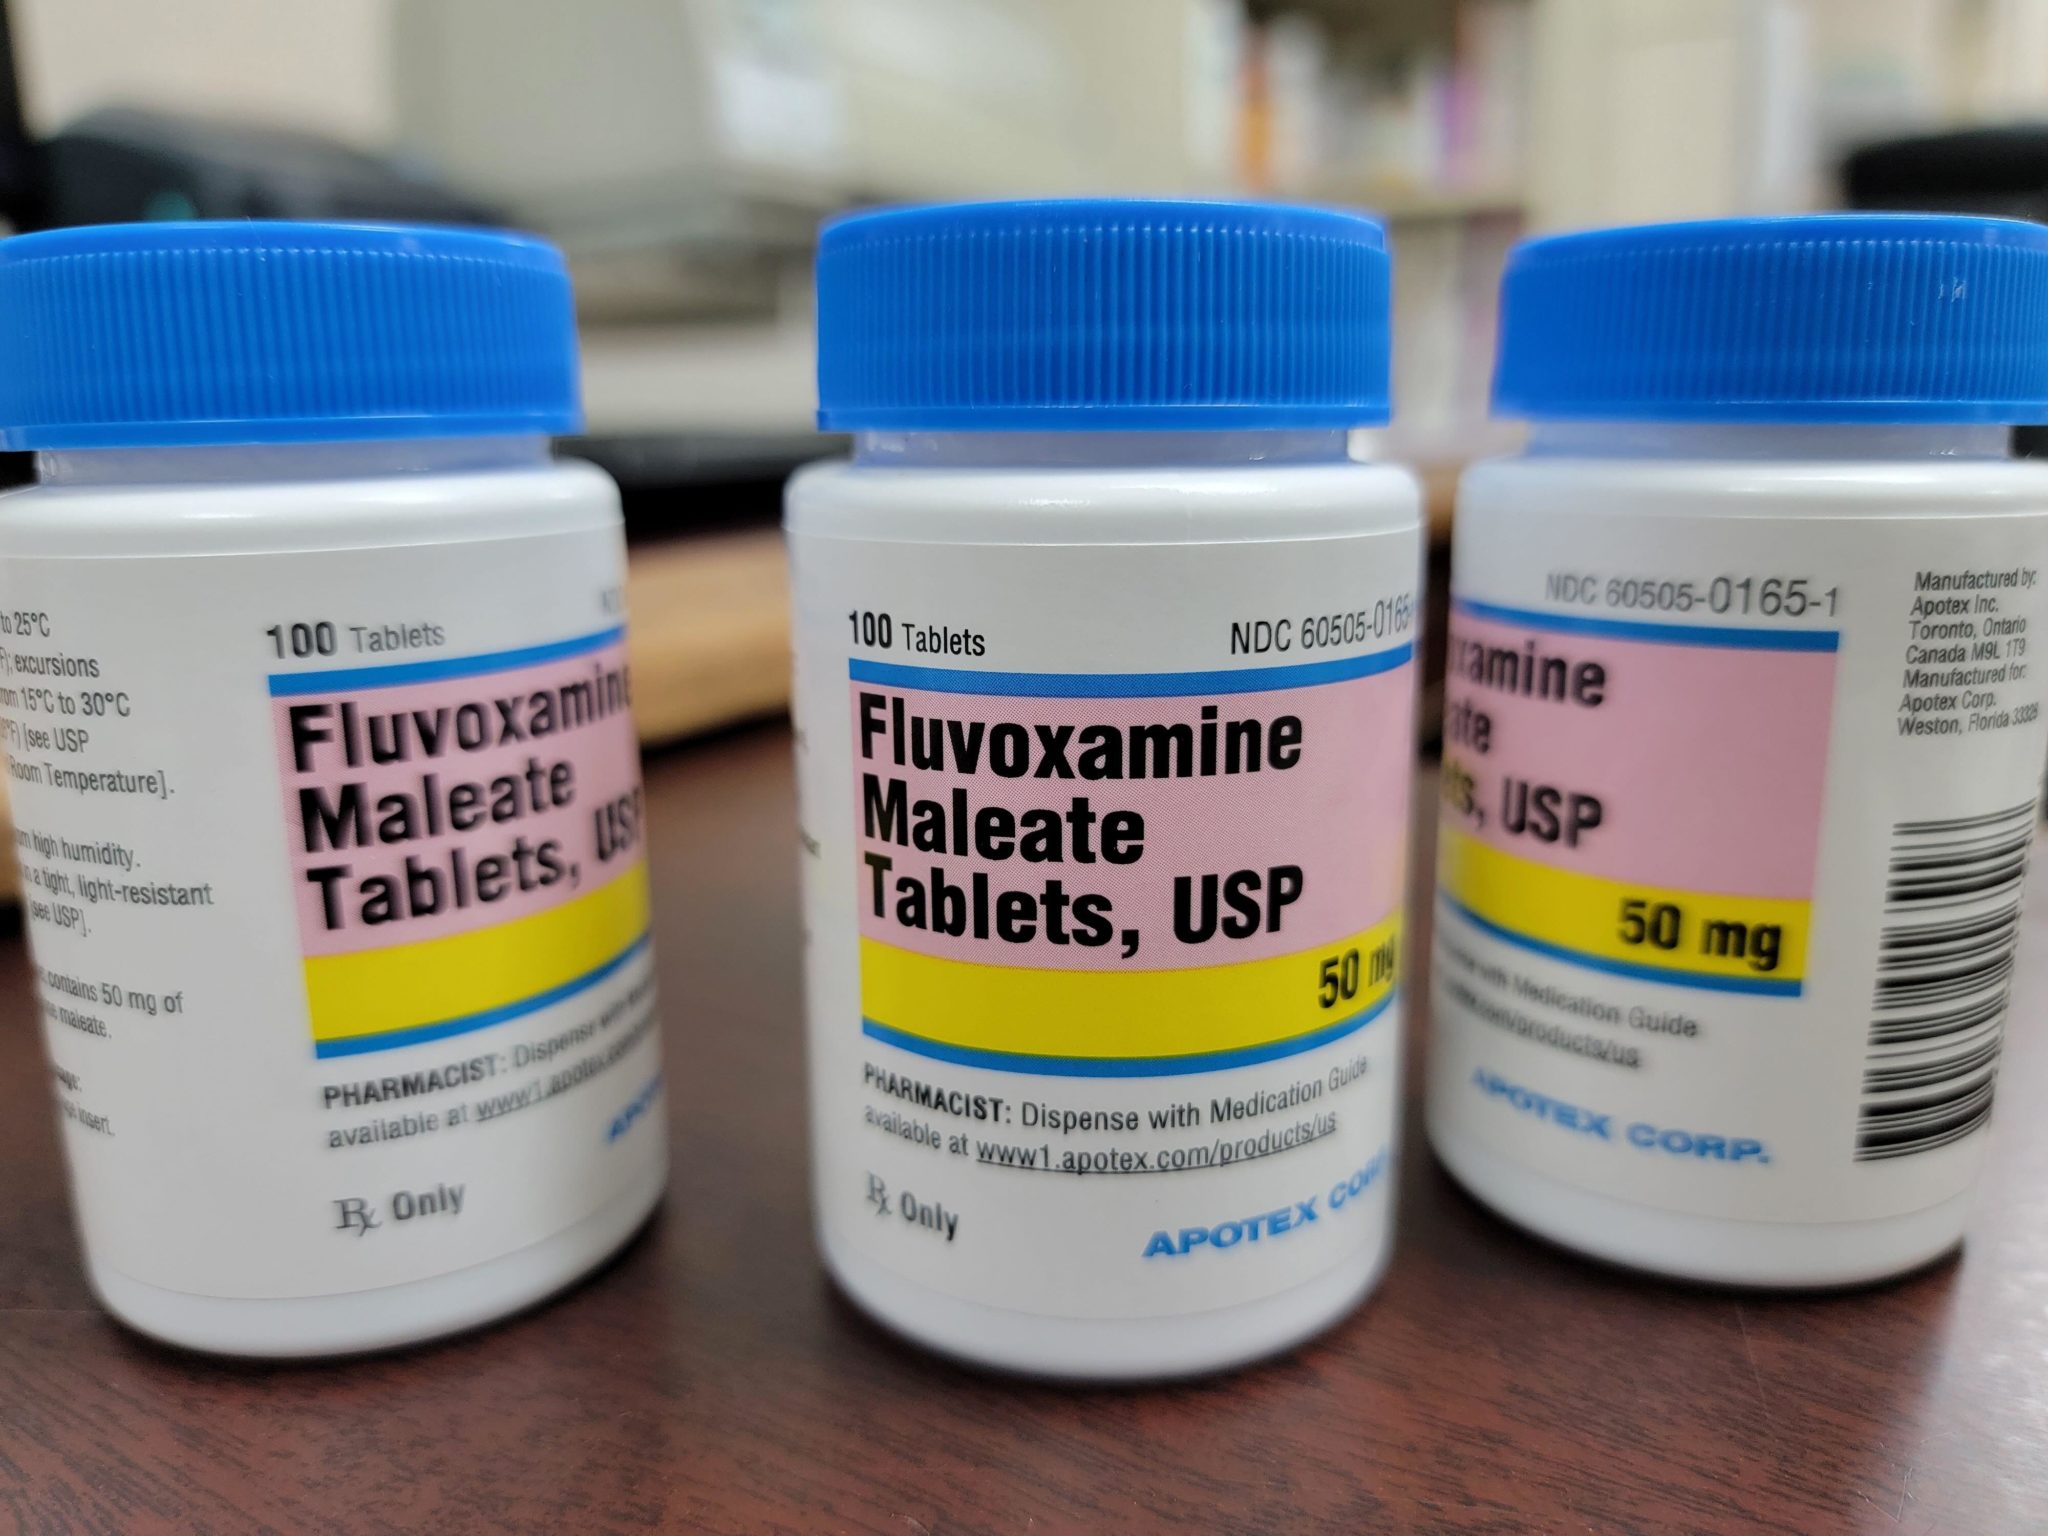  Bottles of Fluvoxamine Maleate tablets. 